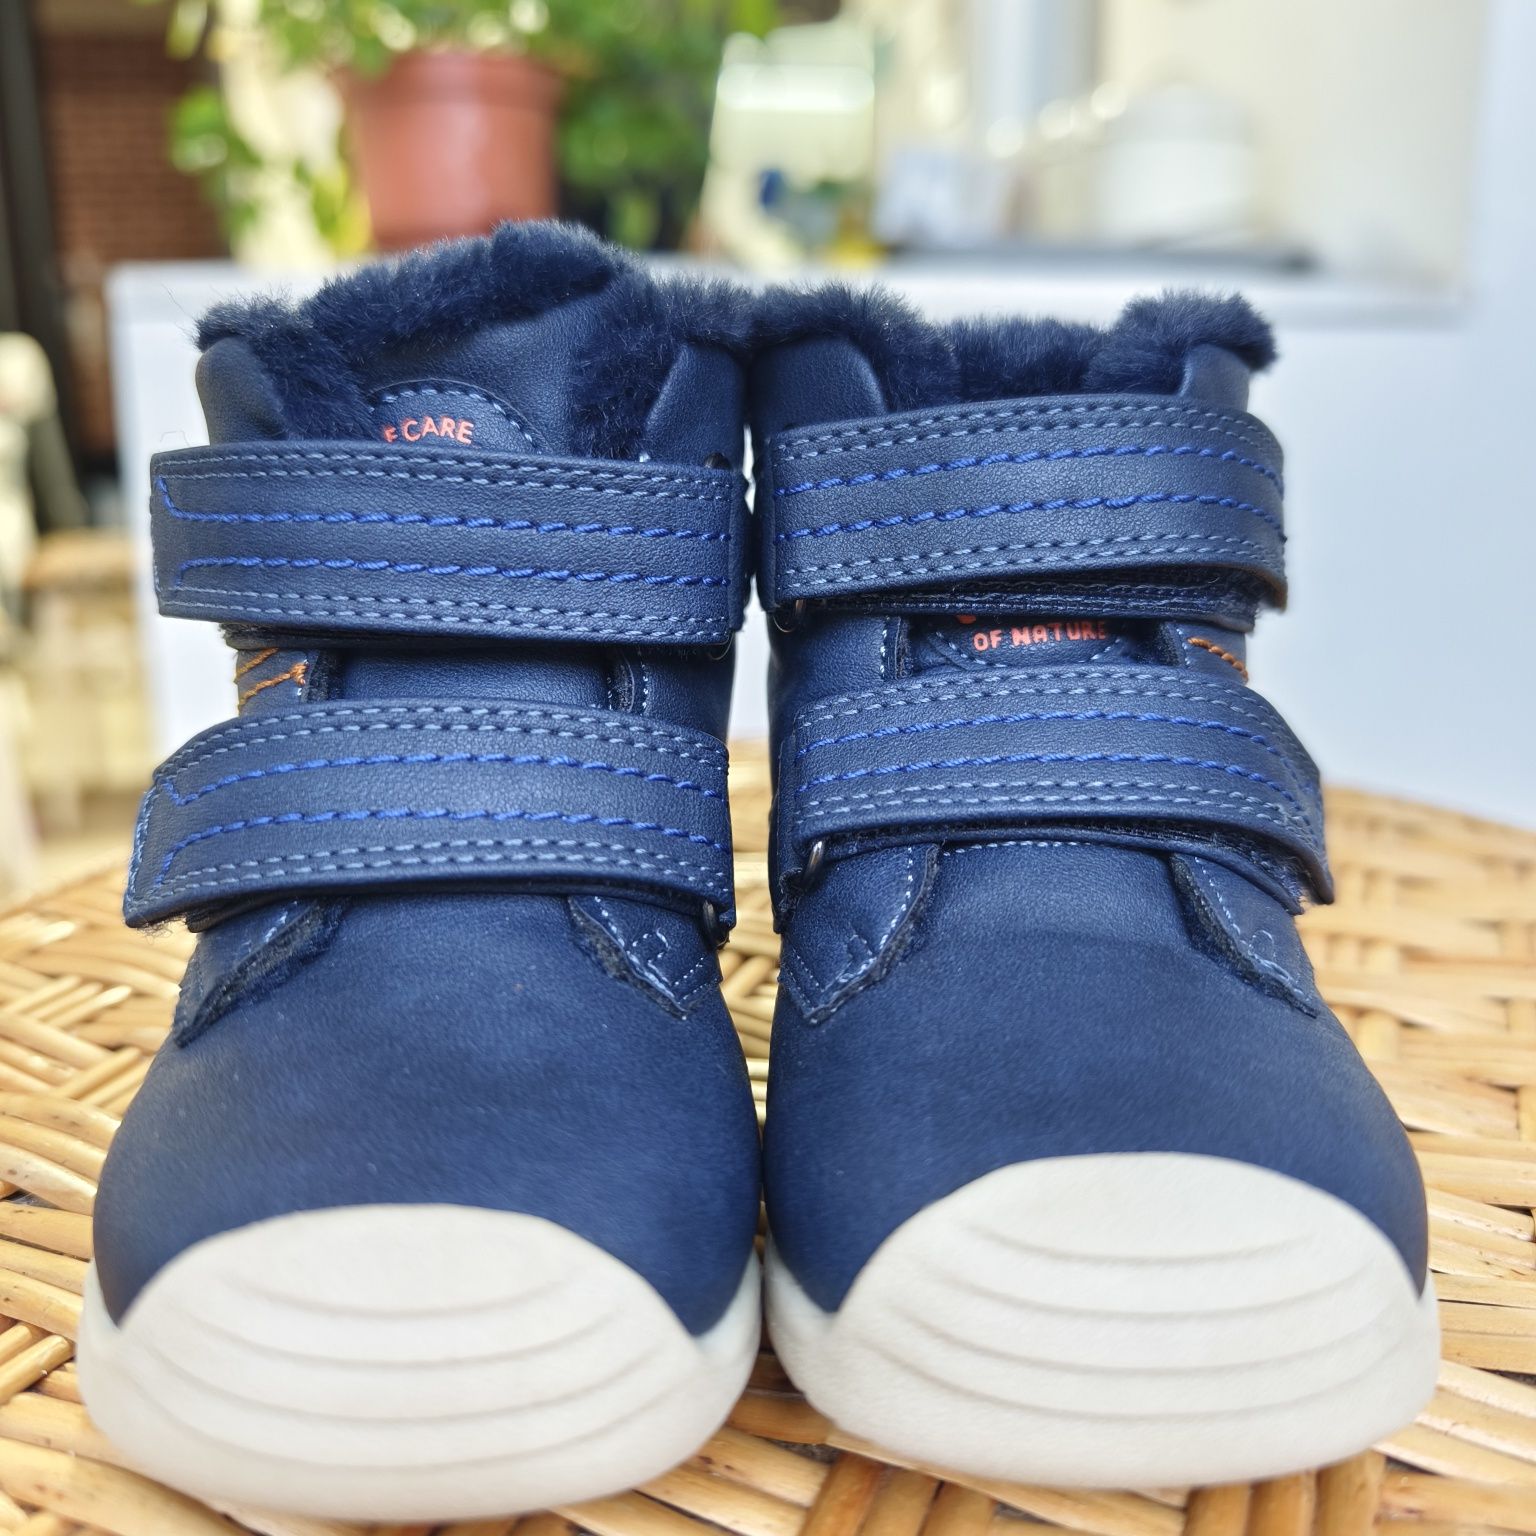 Зимові дитячі черевики